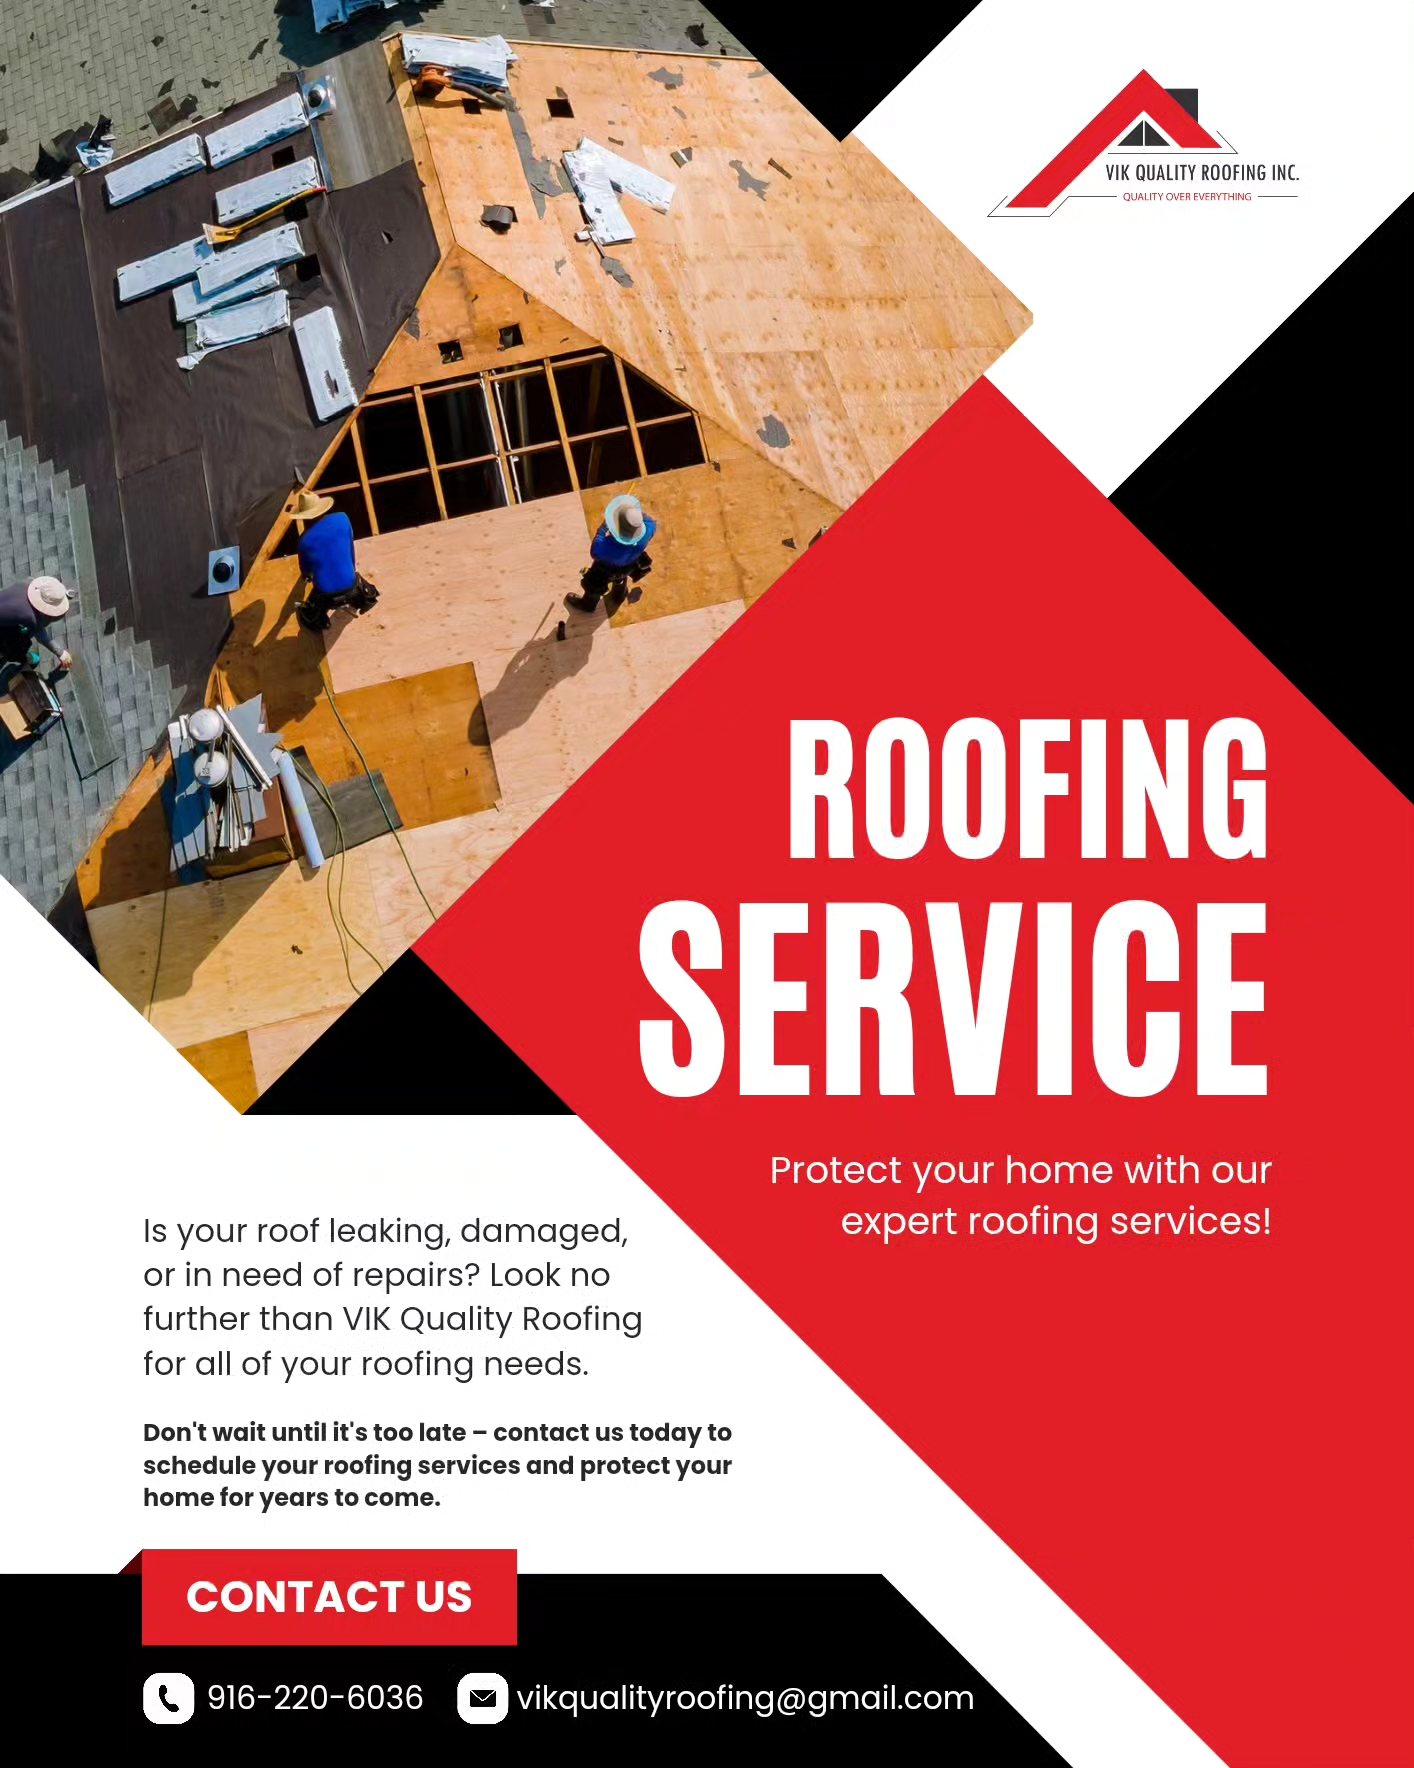 VIK Quality Roofing Inc. 7420 W 4th St, Rio Linda California 95673